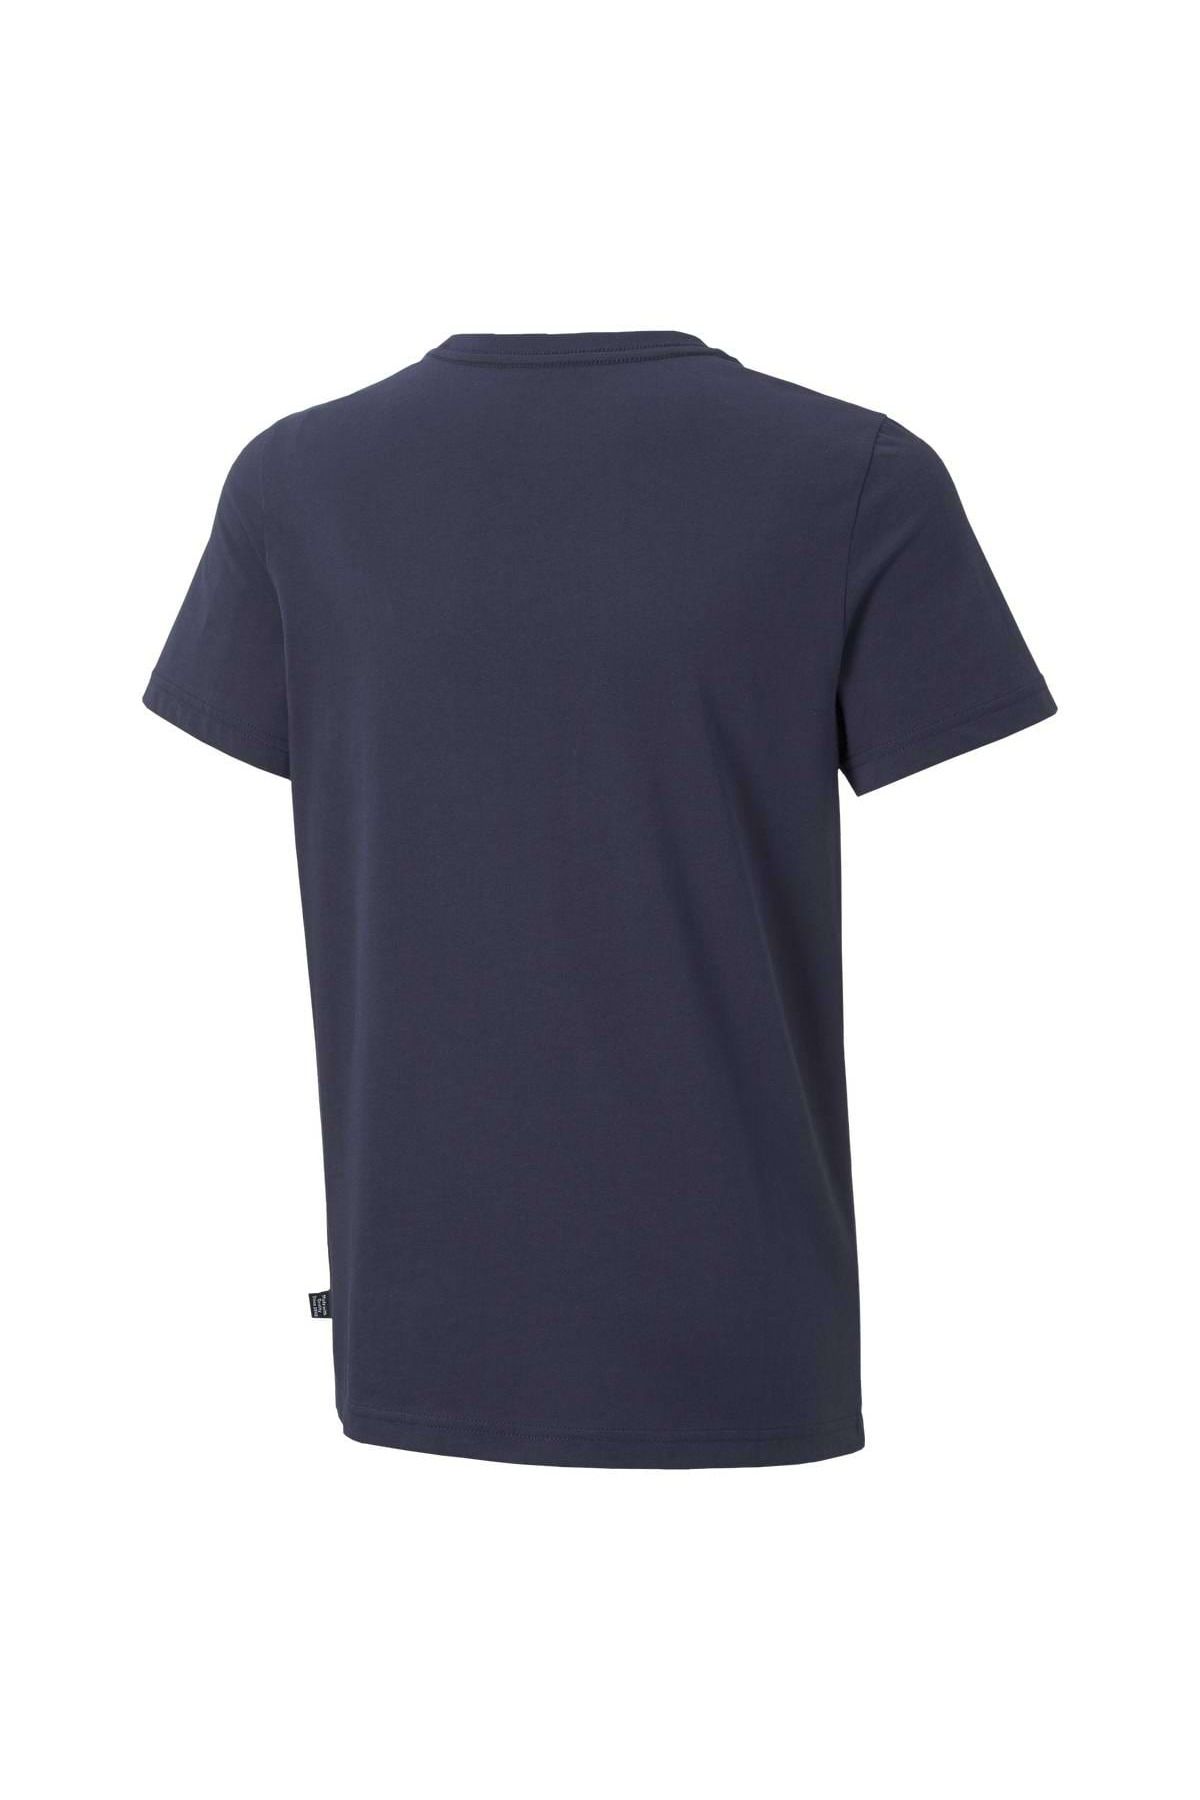 2 - Puma Col T-Shirt - Trendyol Tee, ESS+ uni Kurzarm, Jungen Rundhals, Logo